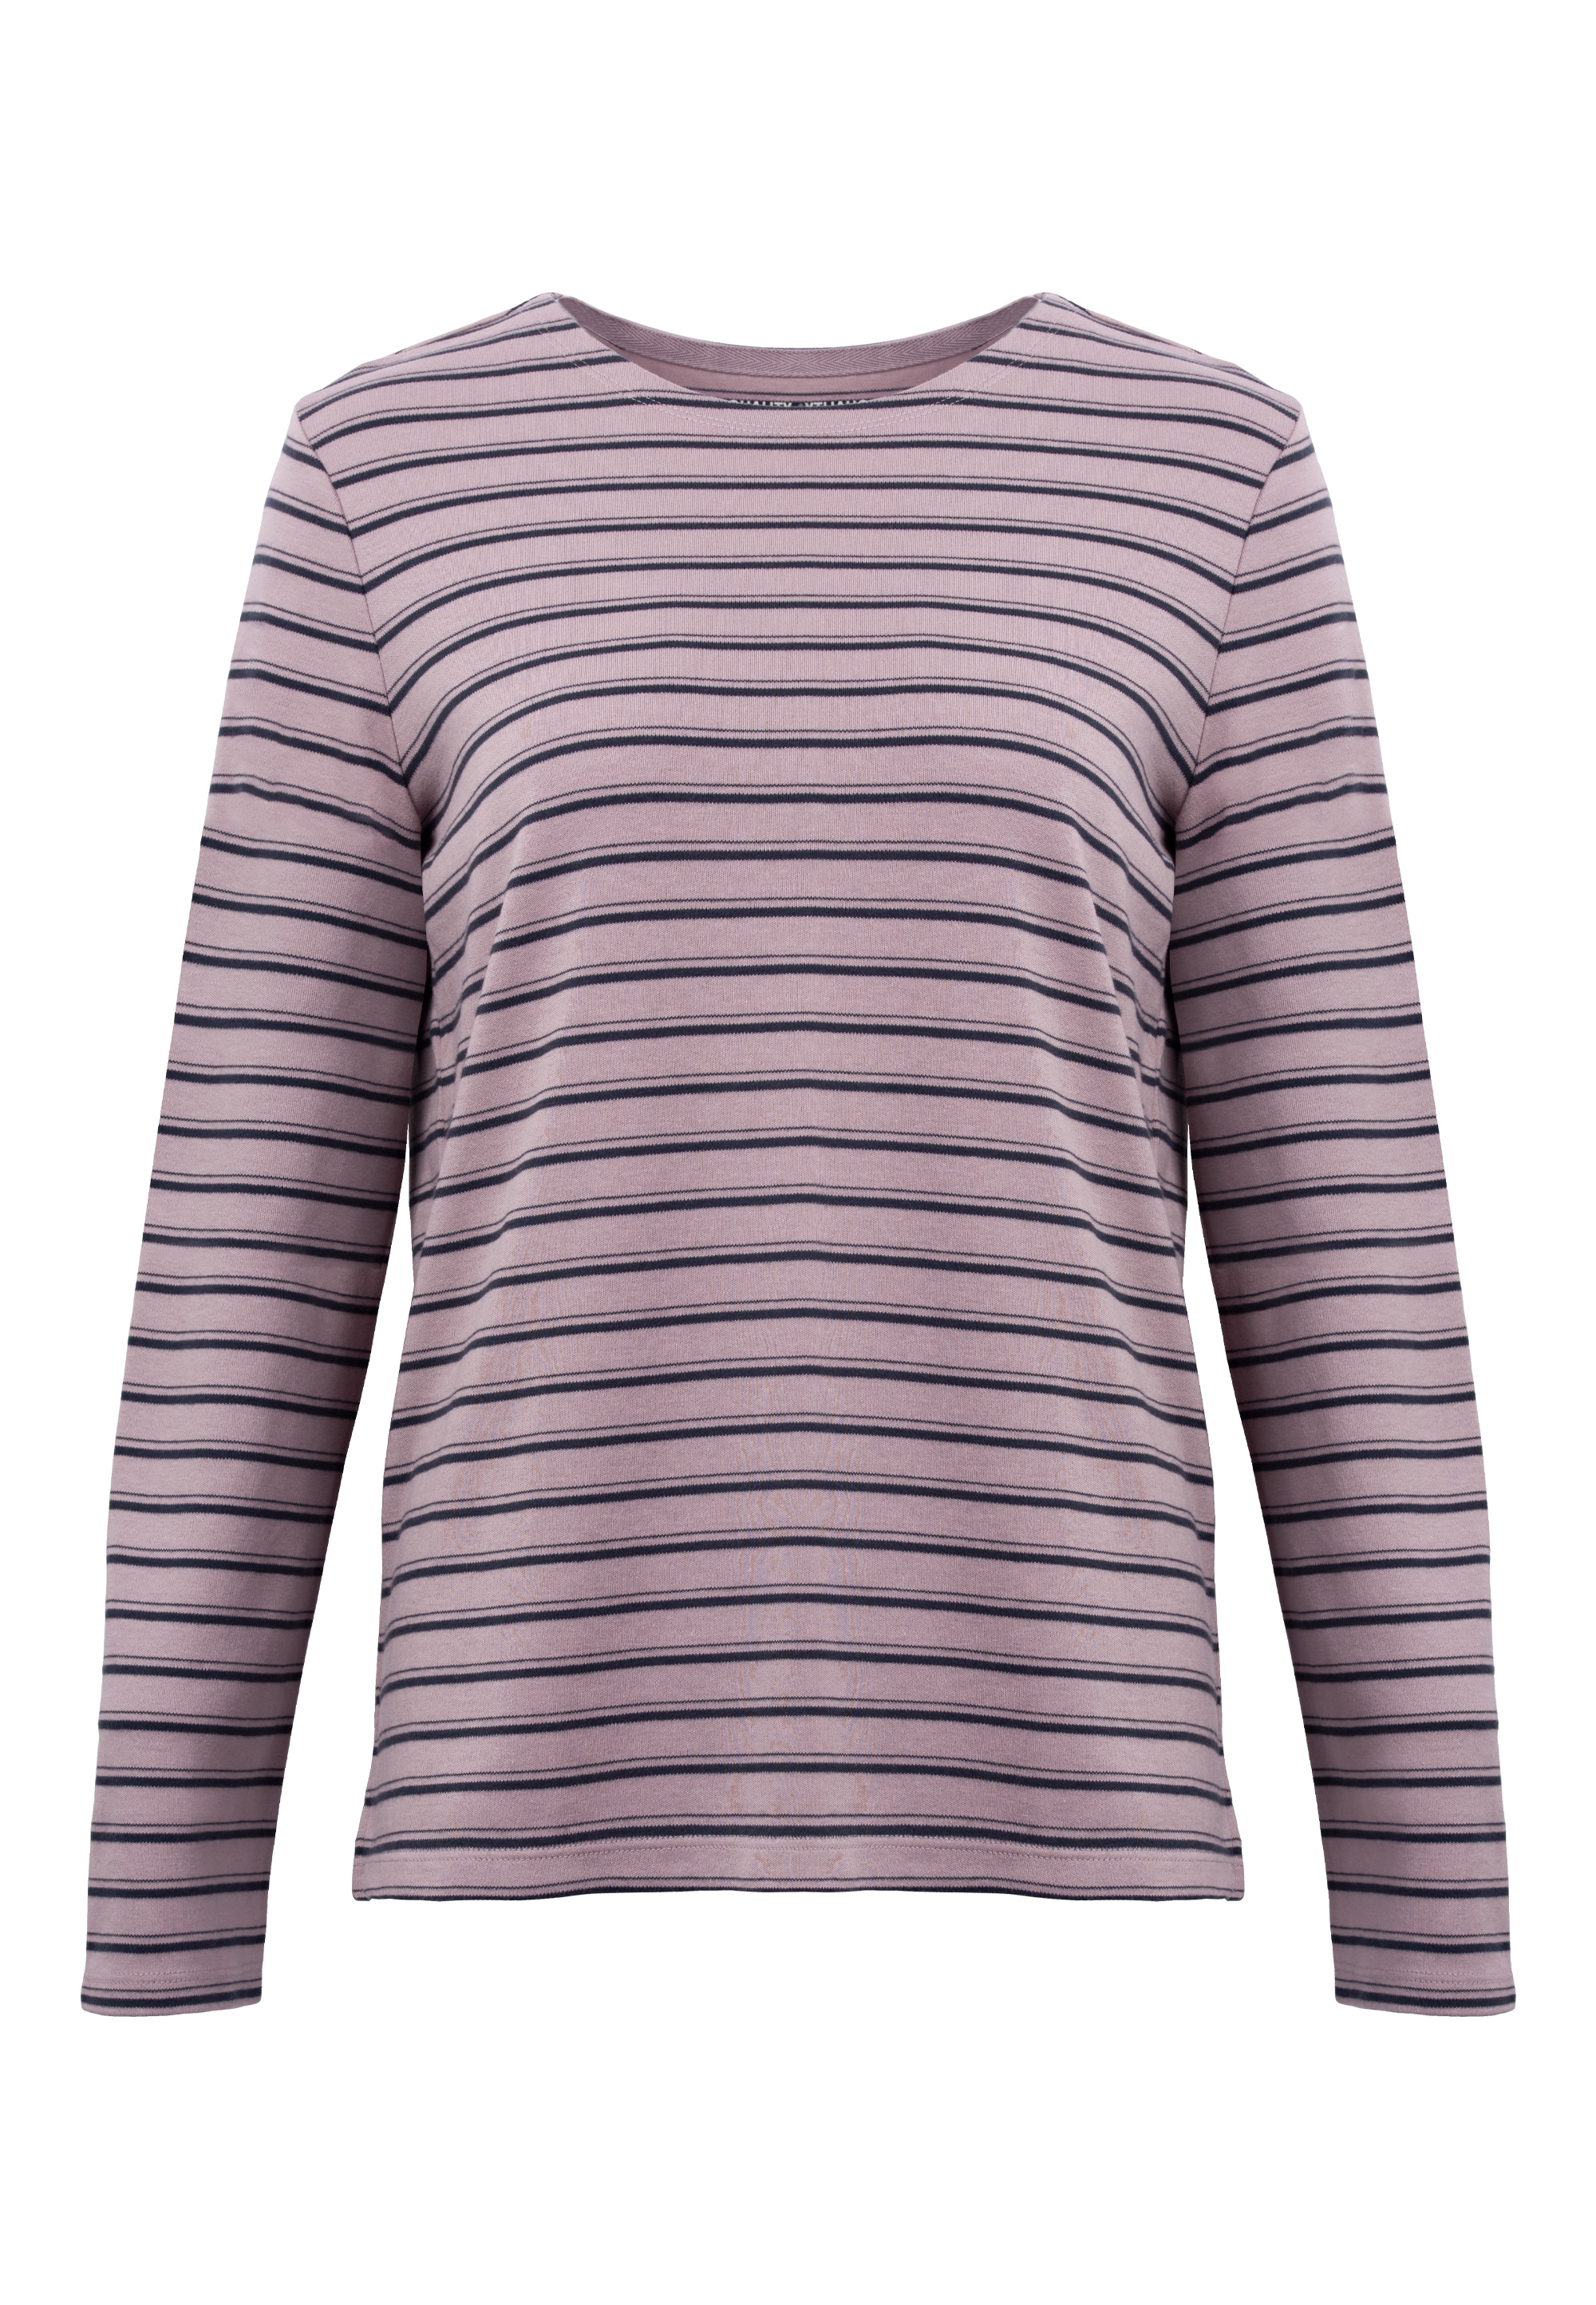 GIORDANO Langarmshirt, in tollem Streifen-Design für kaufen | BAUR